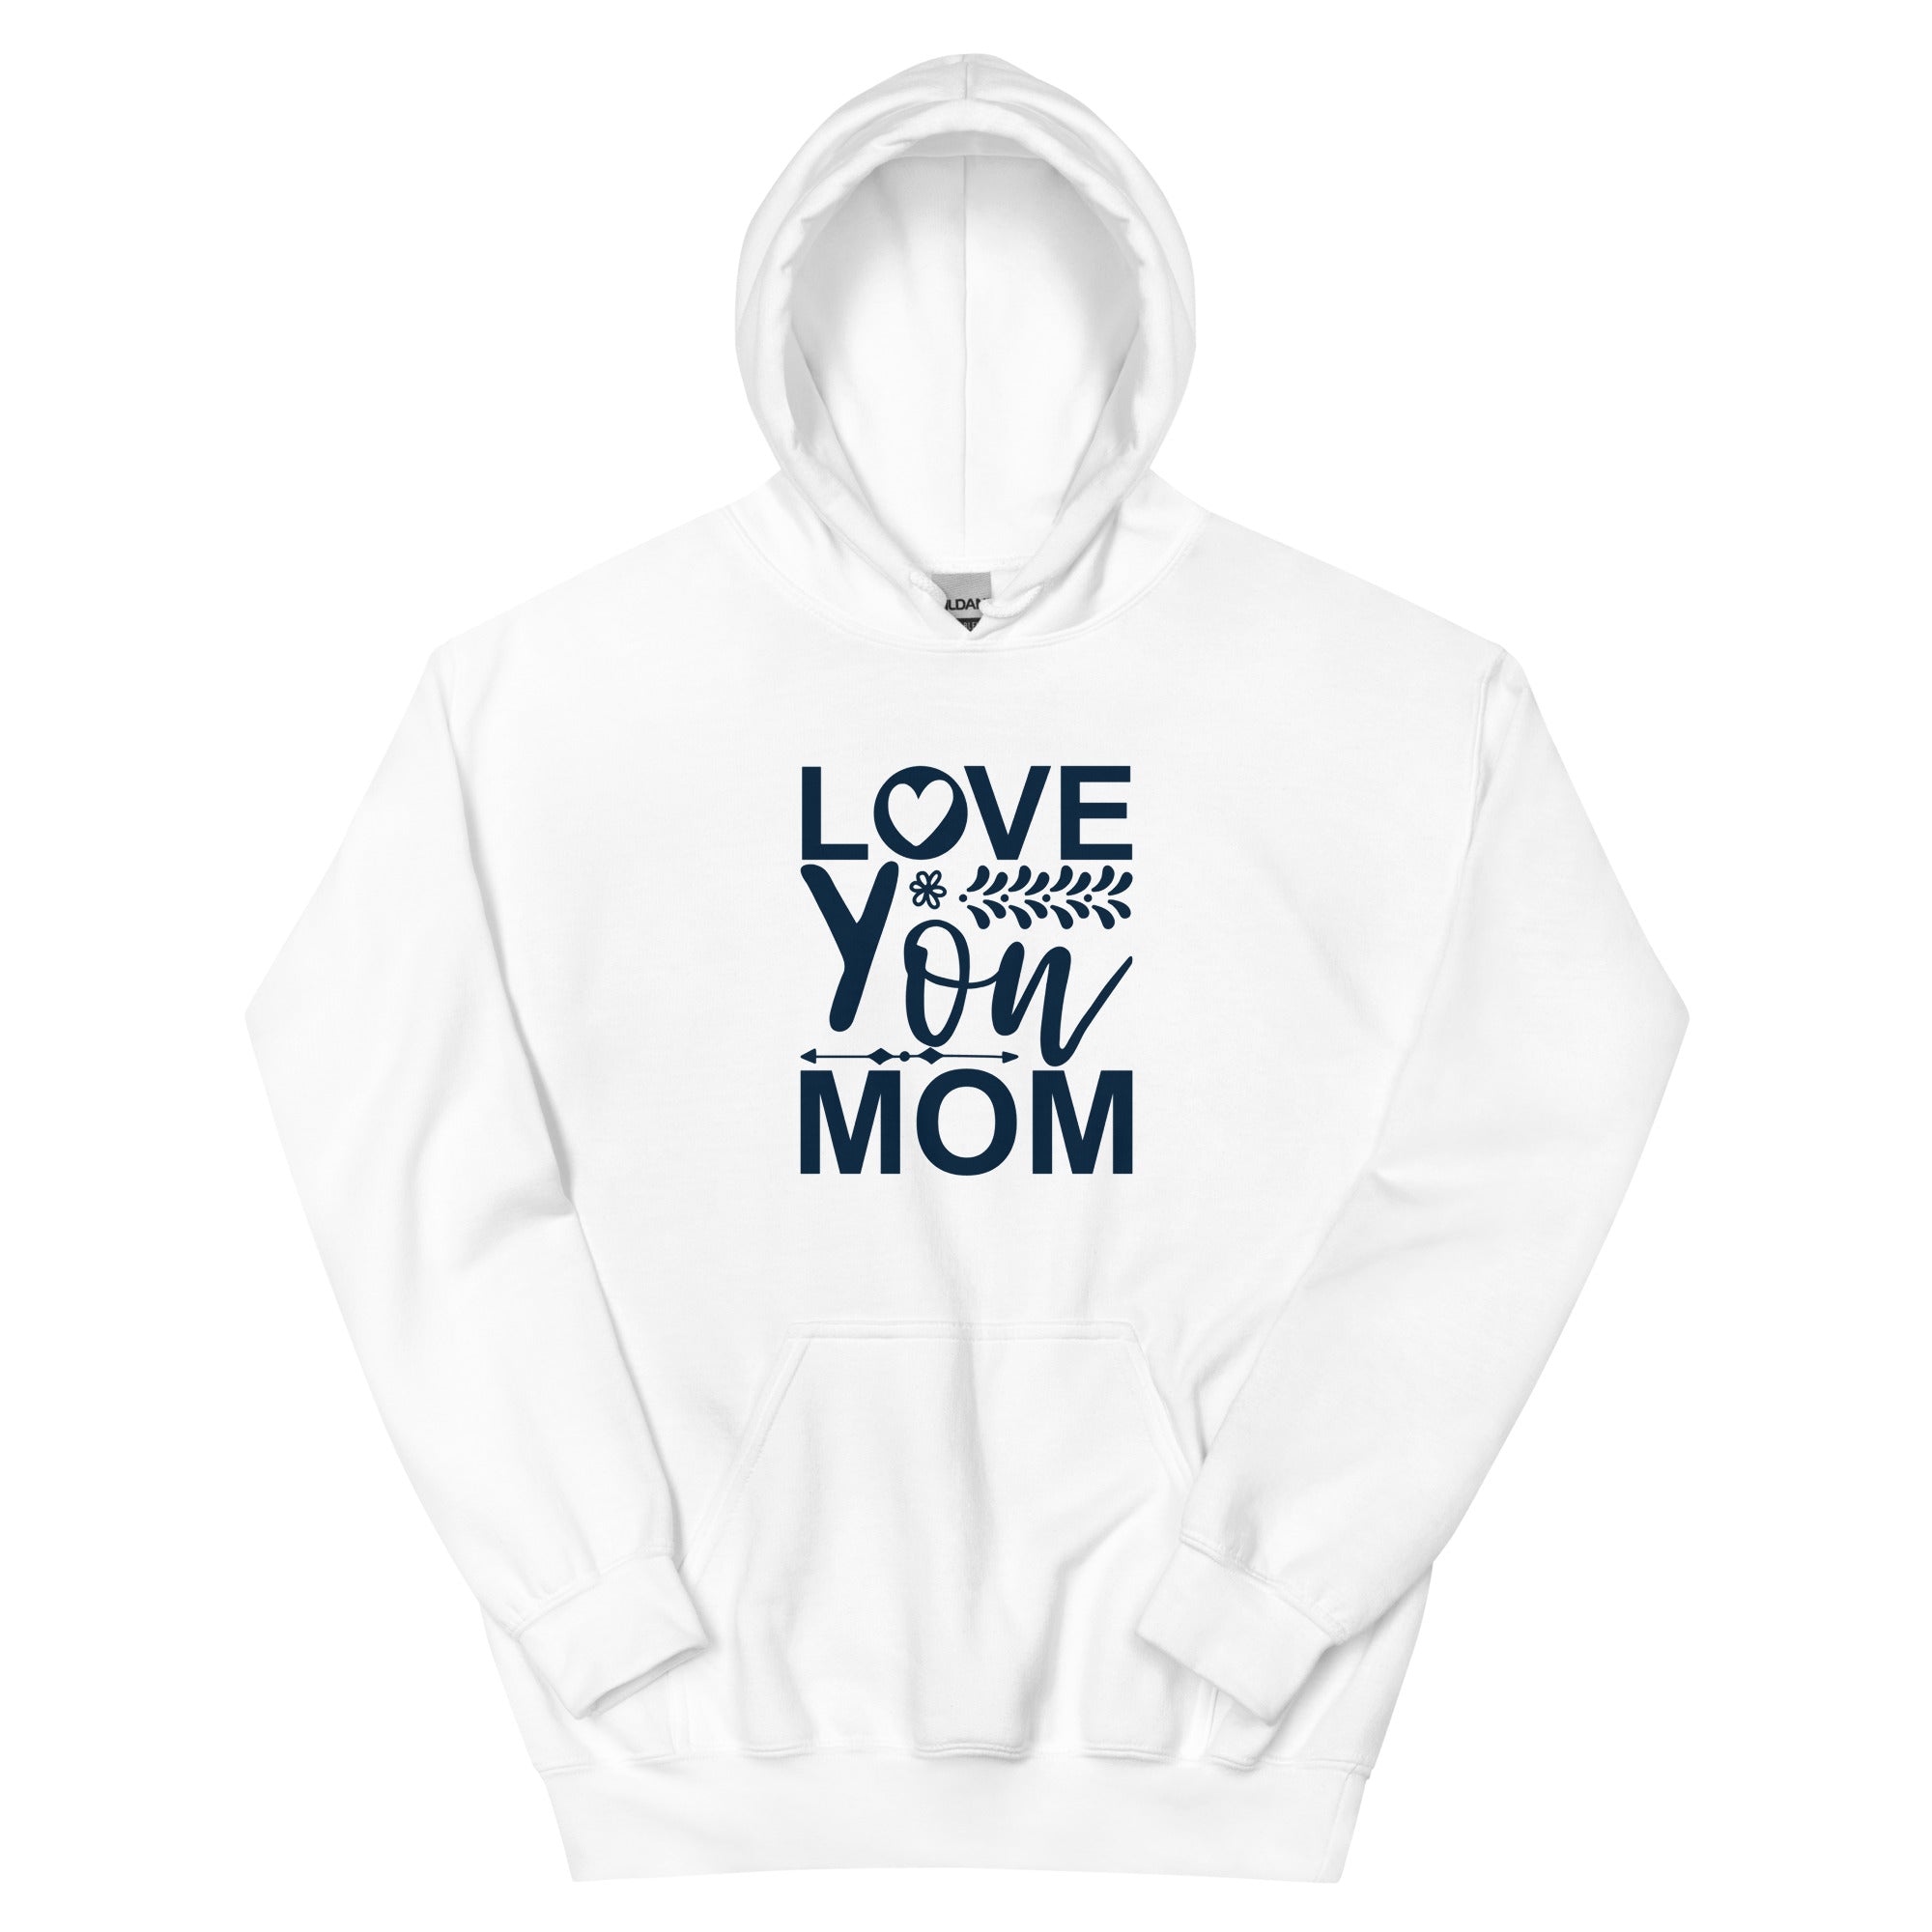 Love You Mom - Unisex Hoodie